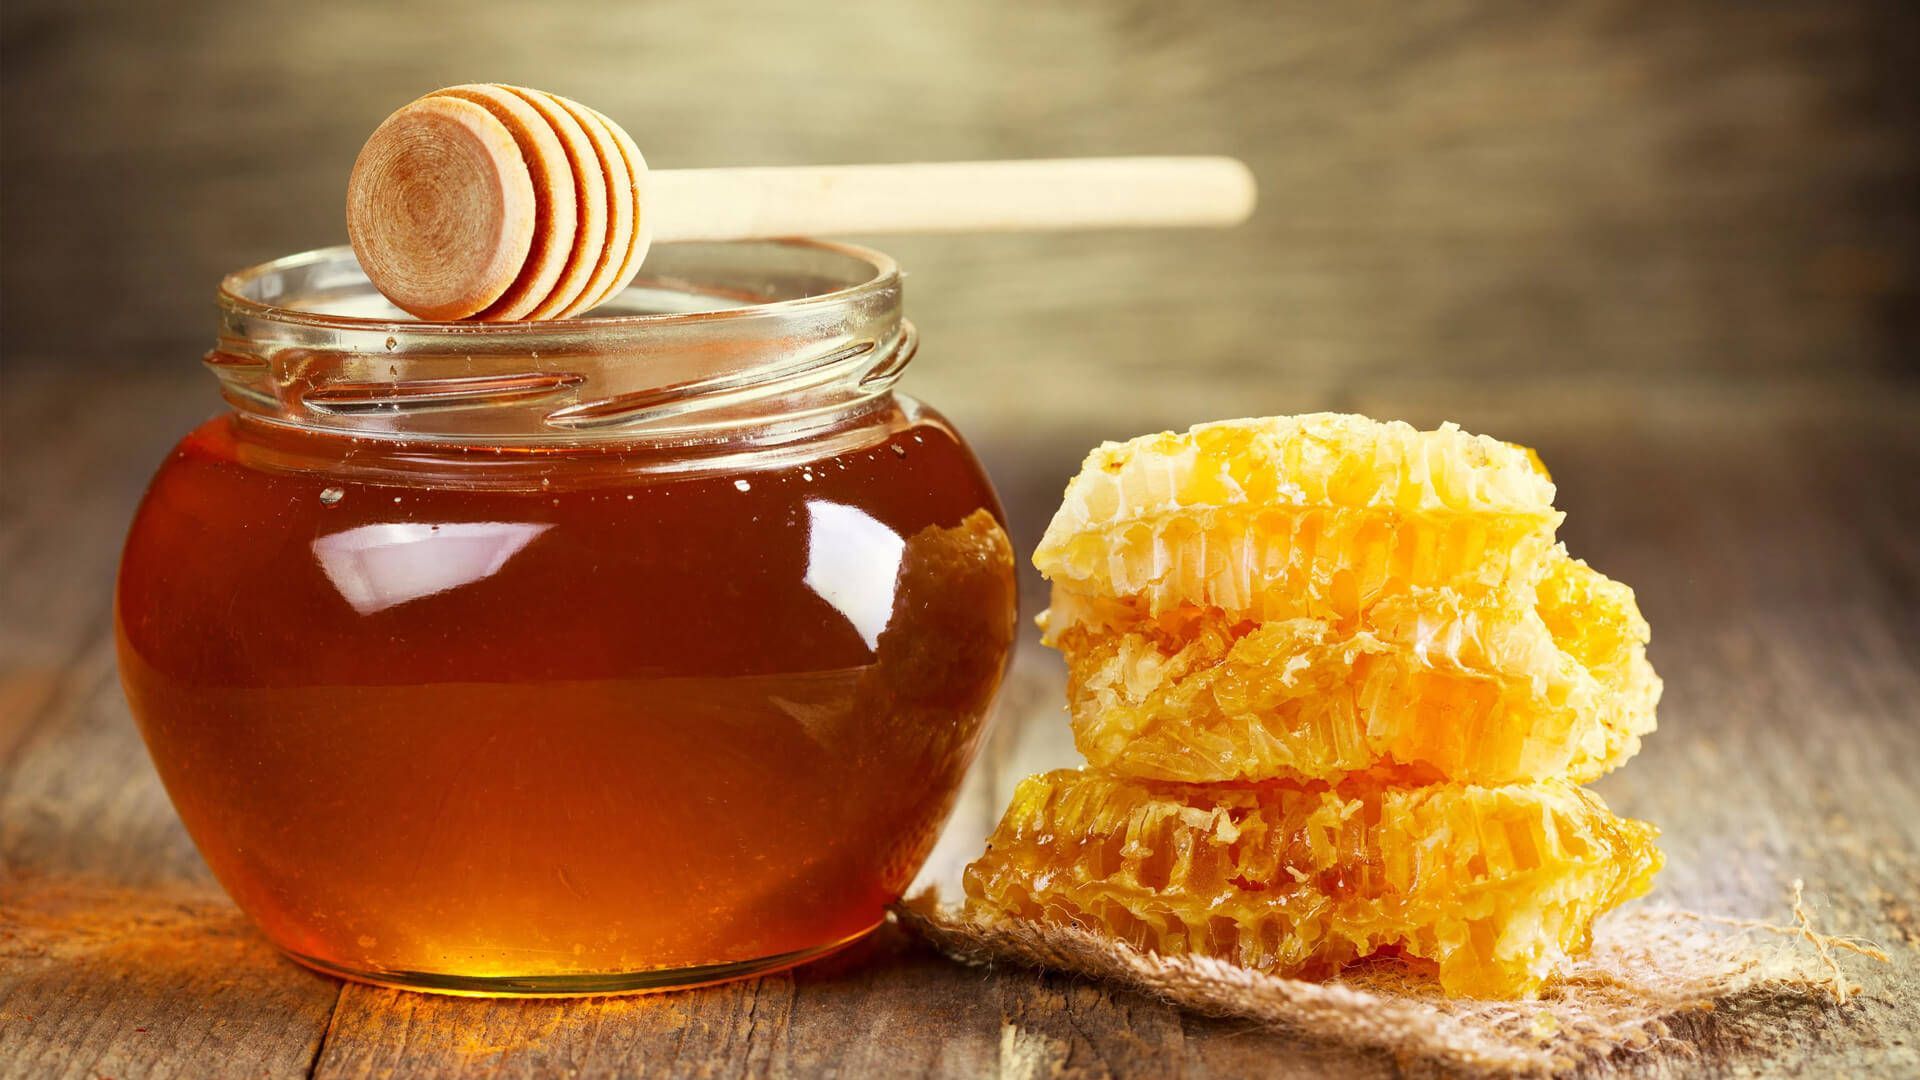 صفر تا صد خواص عسل - عسل هفت گل - عسل طبیعی - عسل مرغوب - عسل با کیفیت - تولید کننده عسل - بهترین تولید کننده عسل - عرضه عسل طبیعی - عرضه عسل - با کیفیت ترین عسل